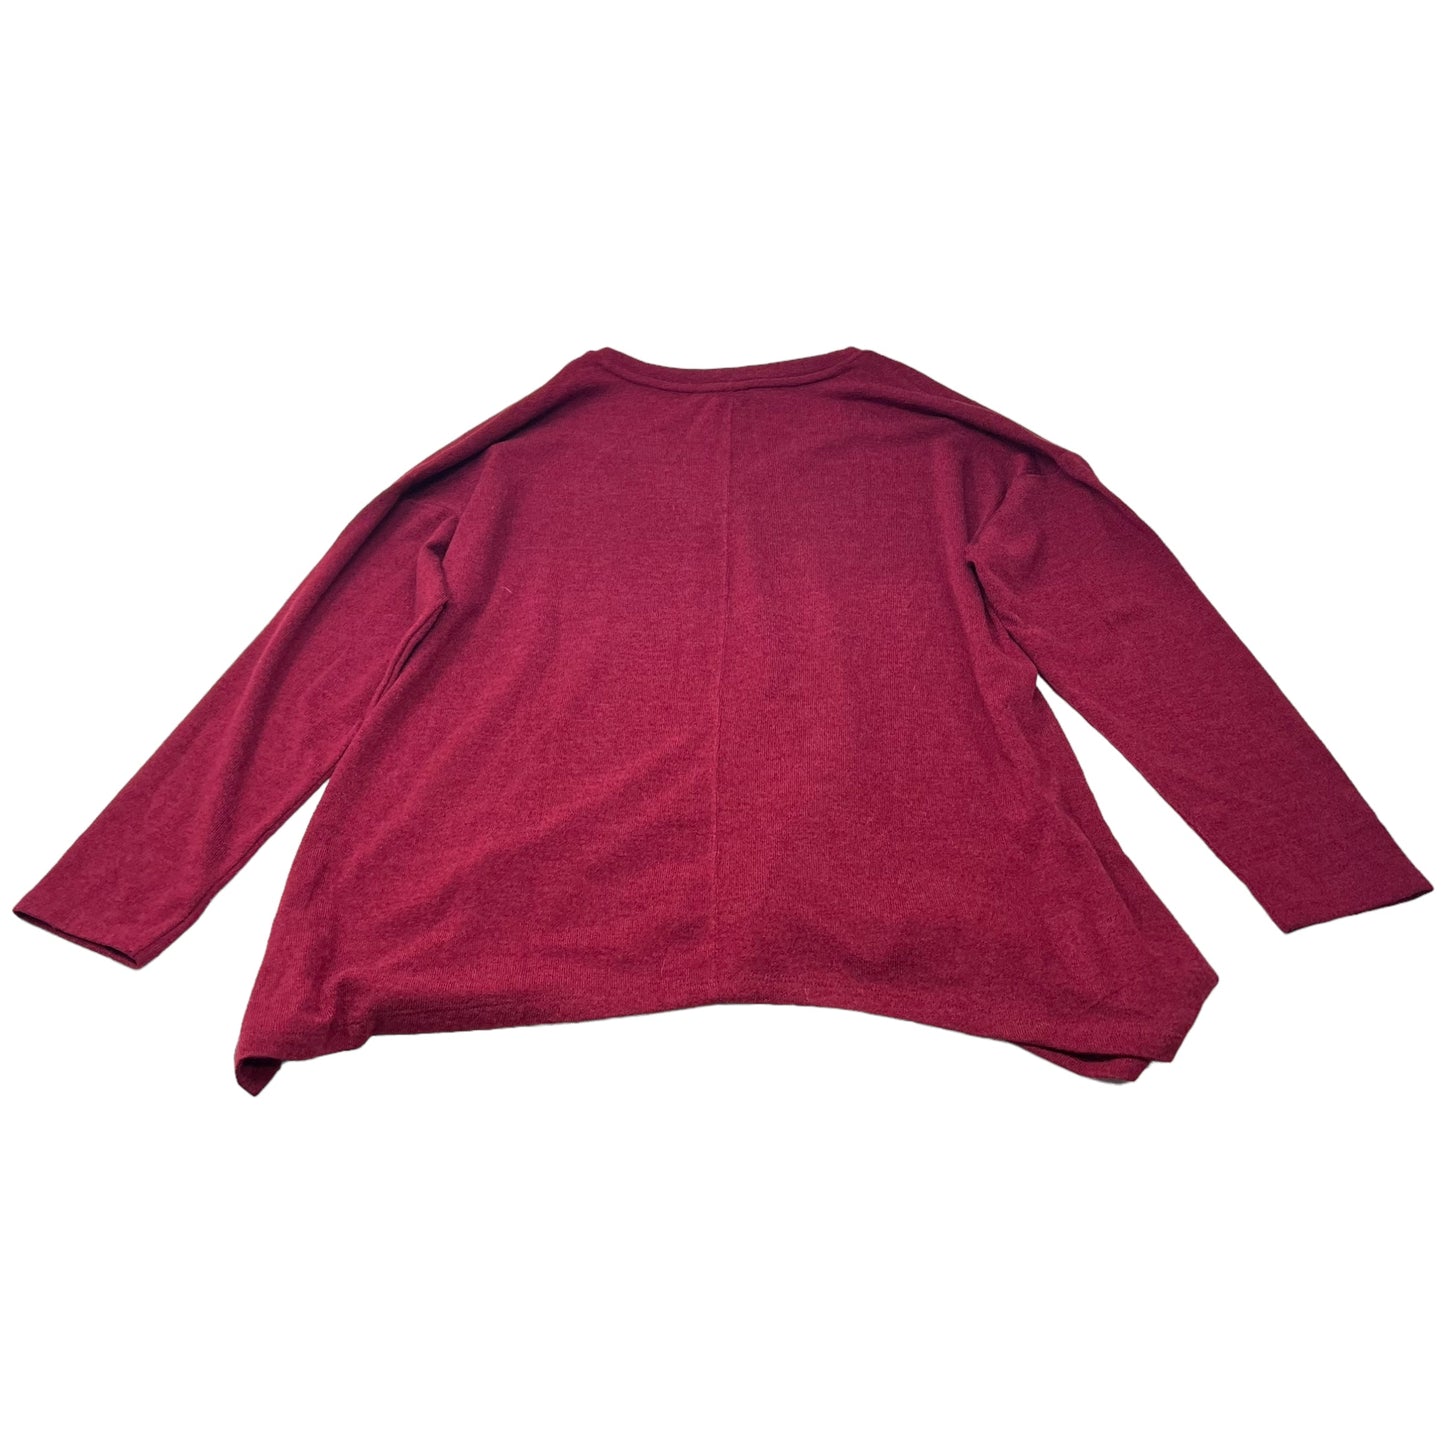 Sweater By Jones New York  Size: Xxl